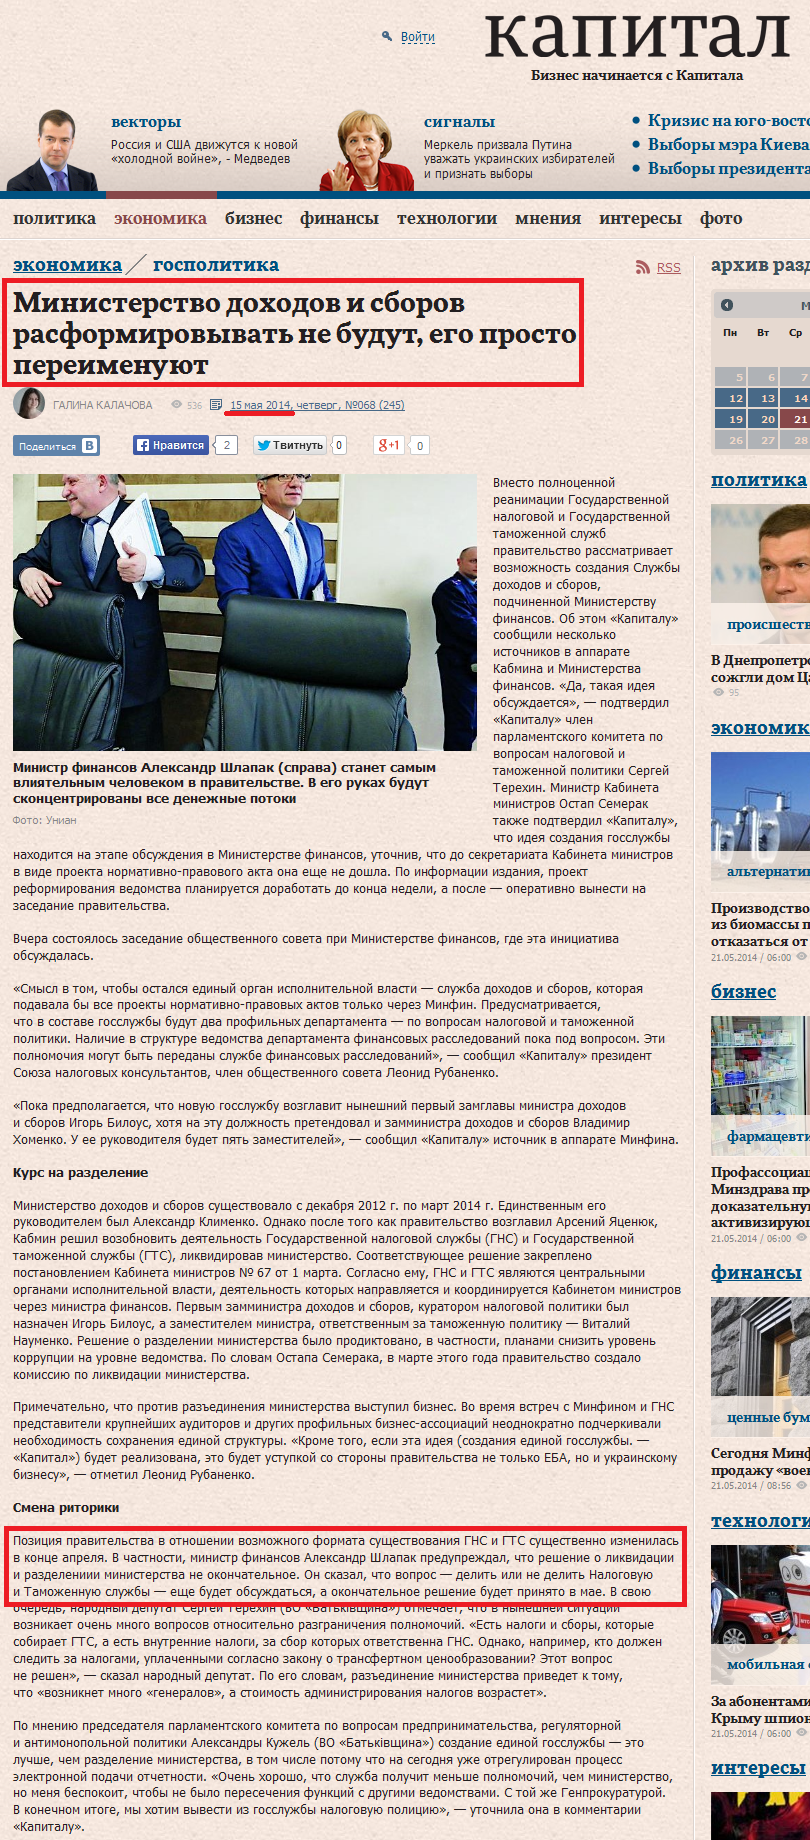 http://www.capital.ua/ru/publication/20026-kabmin-peredumal-rasformirovyvat-ministerstvo-dokhodov-i-sborov-ego-prosto-pereimenuyut